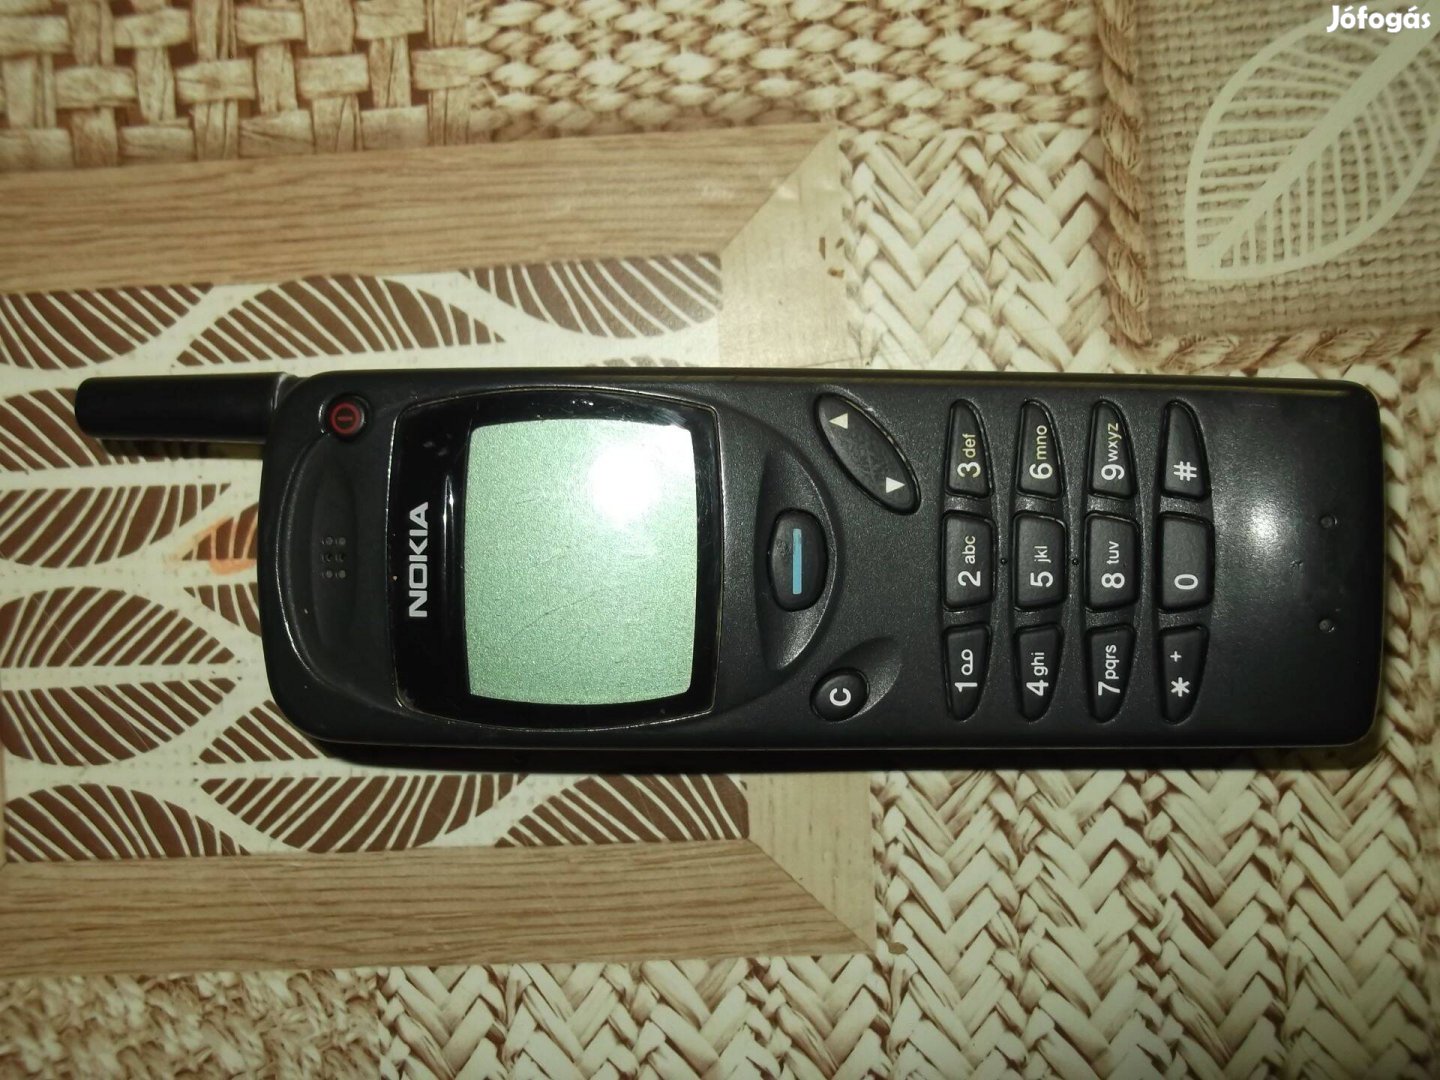 Eladó nagyon olcsón egy retro Nokia 3110 típusú mobiltelefon